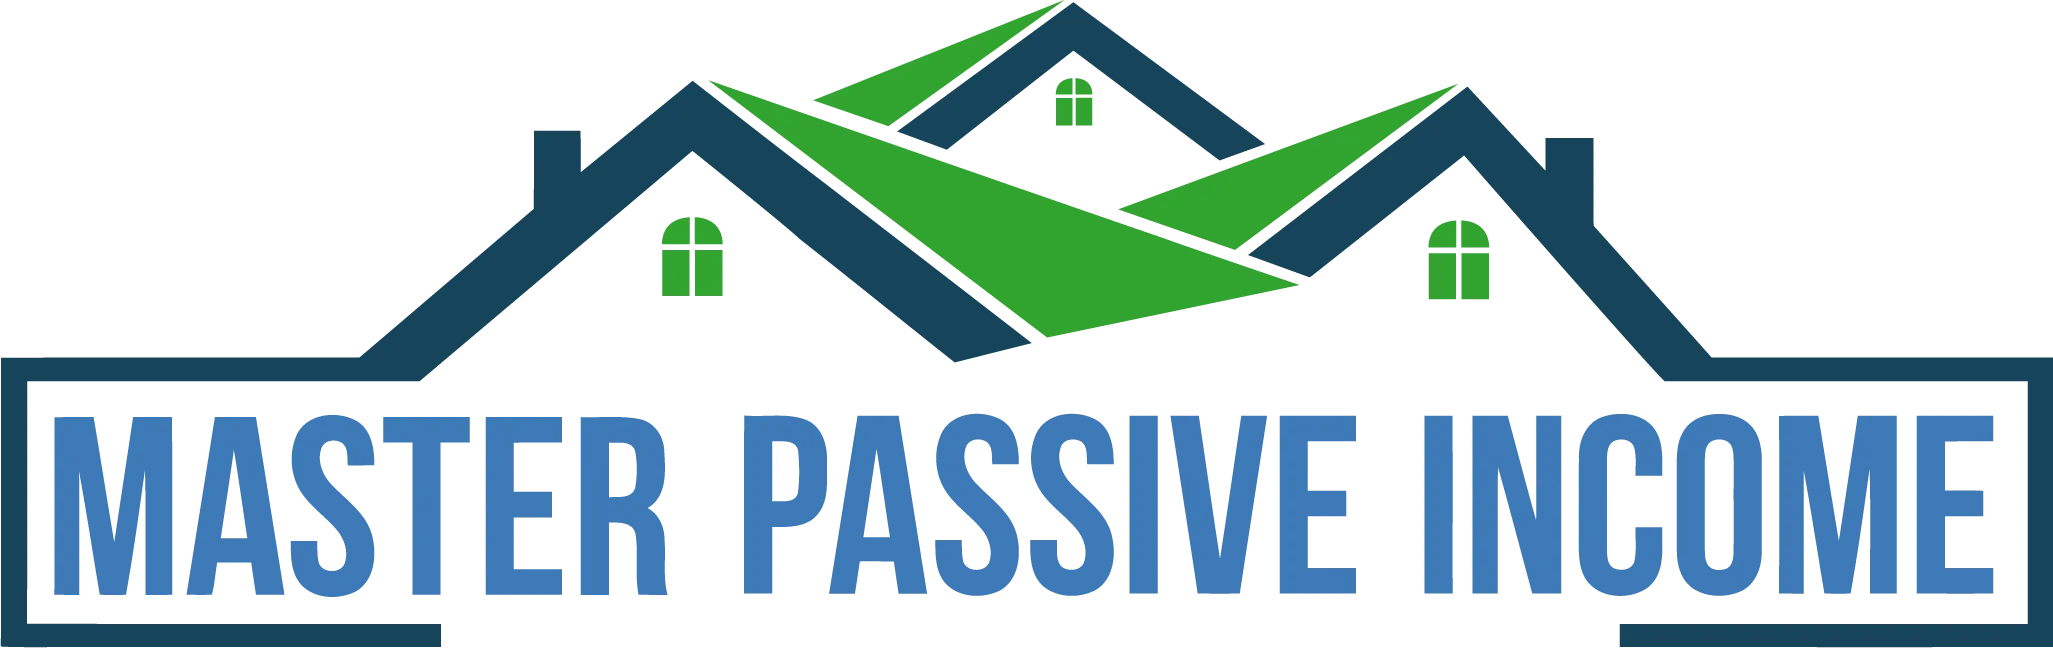 Master Passive Income Real Estate Investing Course image